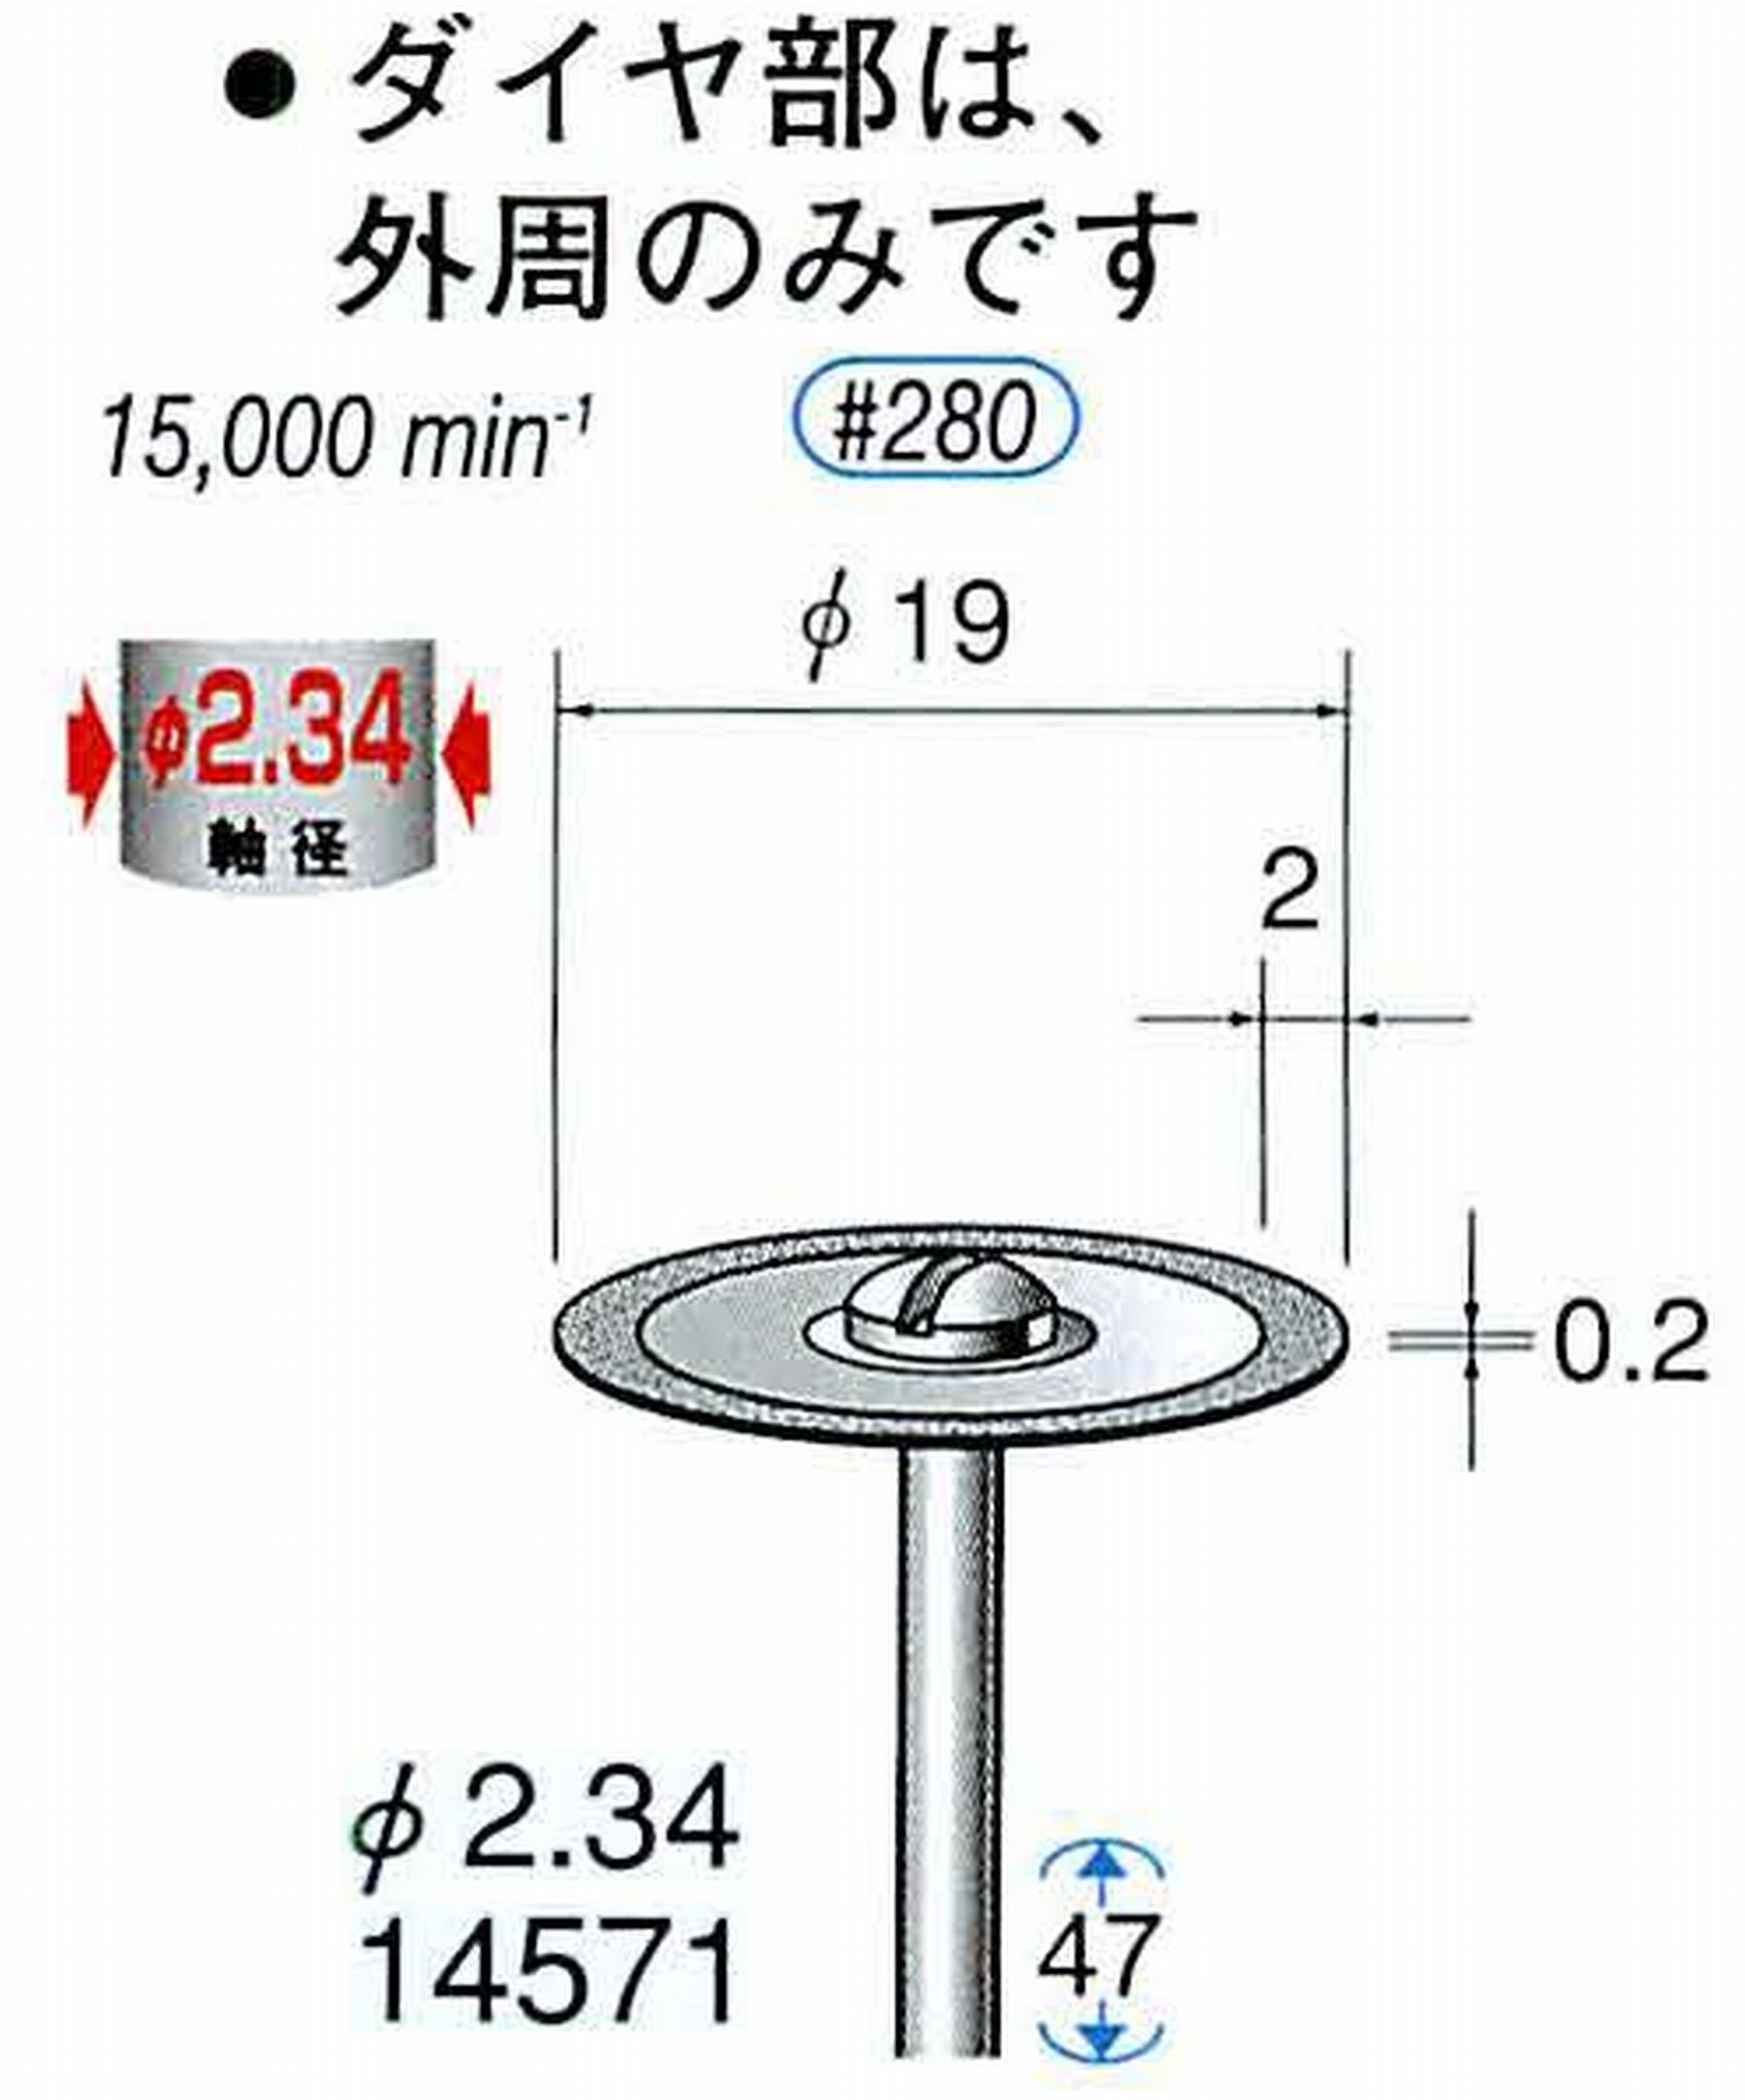 ナカニシ/NAKANISHI ダイヤモンドカッティングディスク メタルボンドタイプ 軸径(シャンク)φ2.34mm 14571